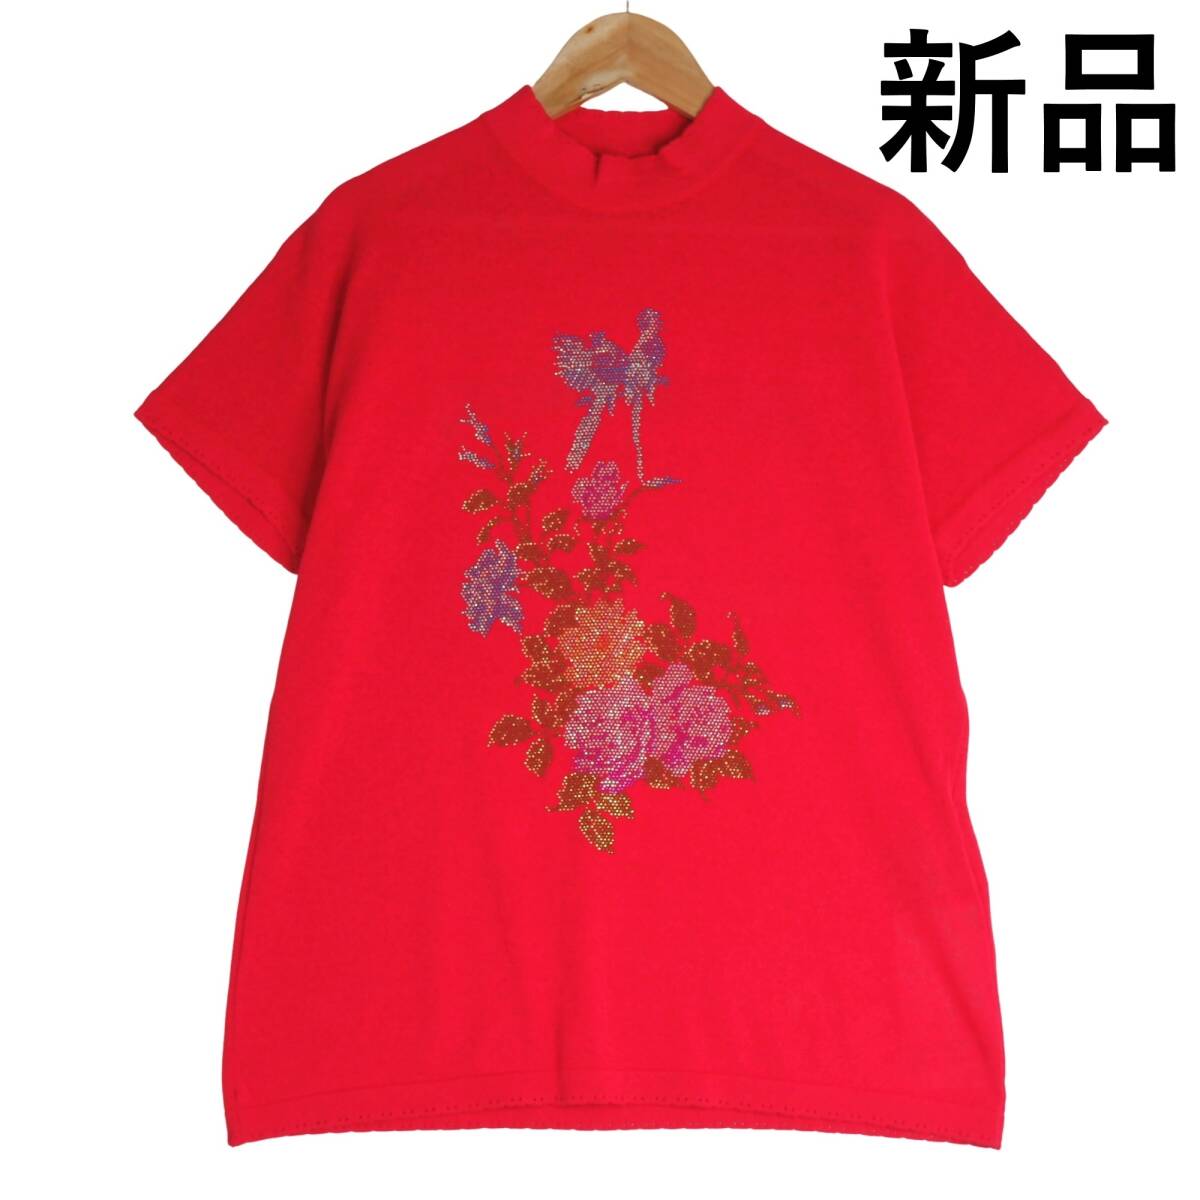 ◆新品 定価3.1万円◆ 伊太利屋 イタリヤ 豪華 ラインストーン サマーニット 半袖 カットソー Tシャツ 赤 レッド レディース 11 L 0814E0の画像1